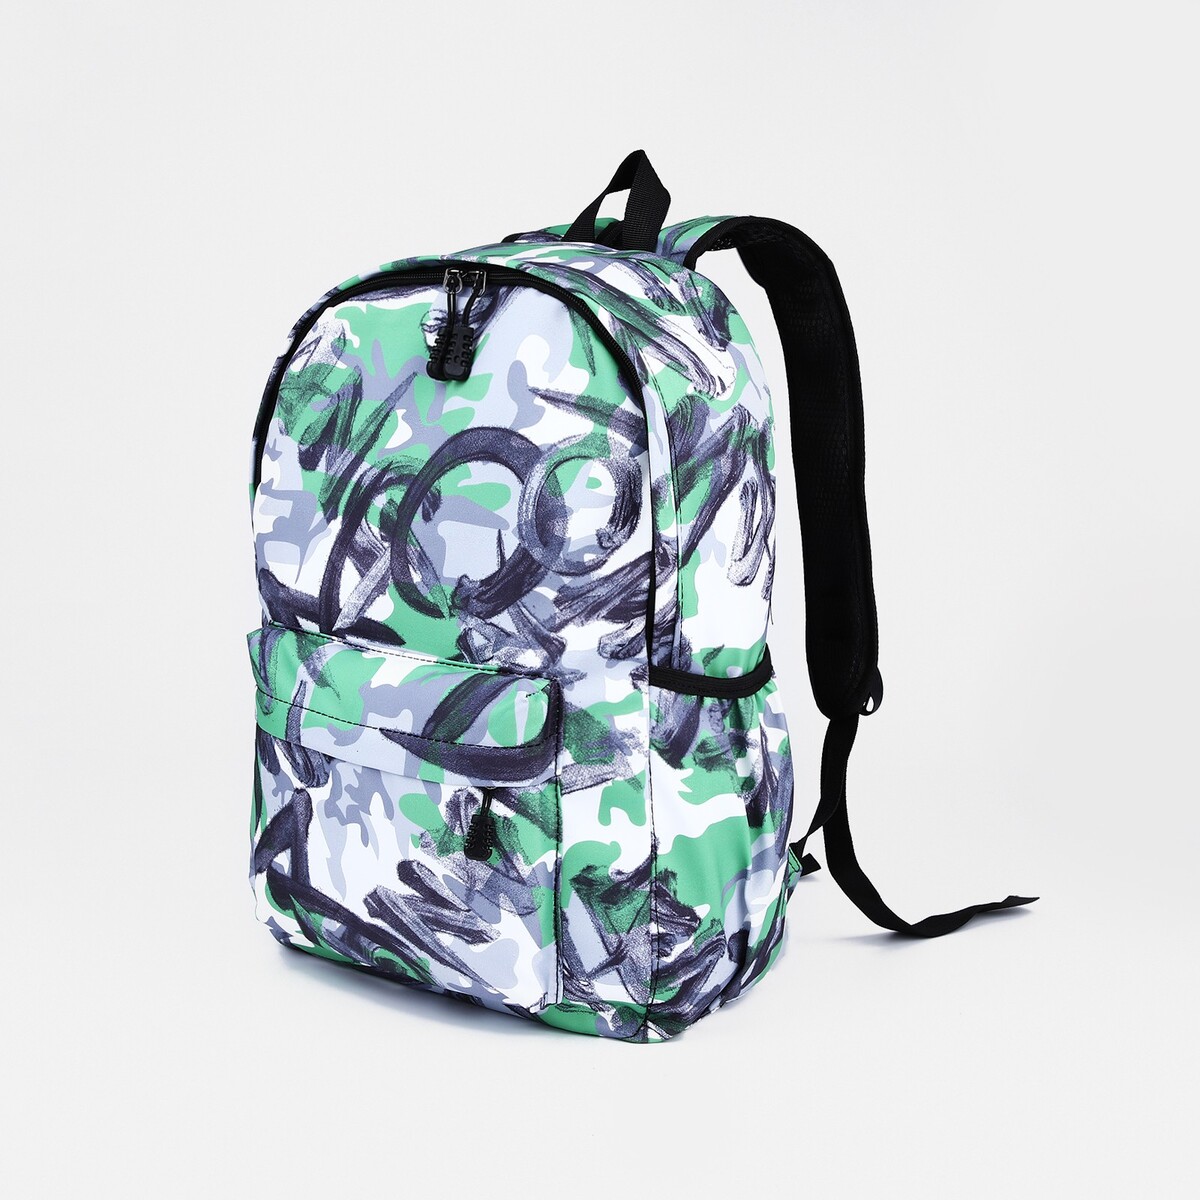 Рюкзак школьный из текстиля на молнии, 3 кармана, цвет зеленый/серый рюкзак сумка из текстиля на молнии 3 кармана отдел для ноутбука серый